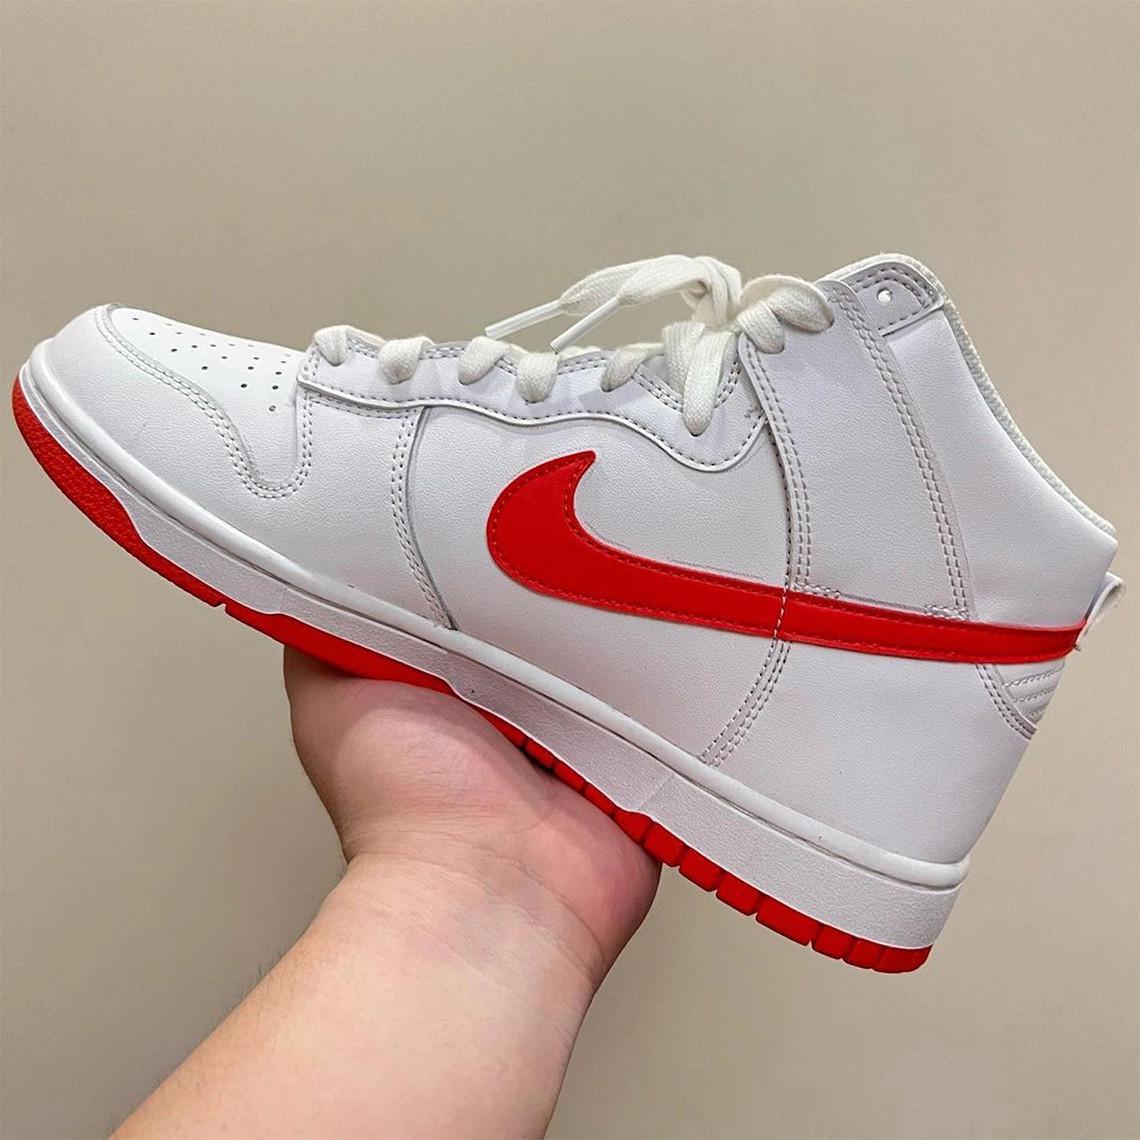 Un échantillon de Nike Dunk High en "blanc/rouge" apparaît avant la sortie de 2023